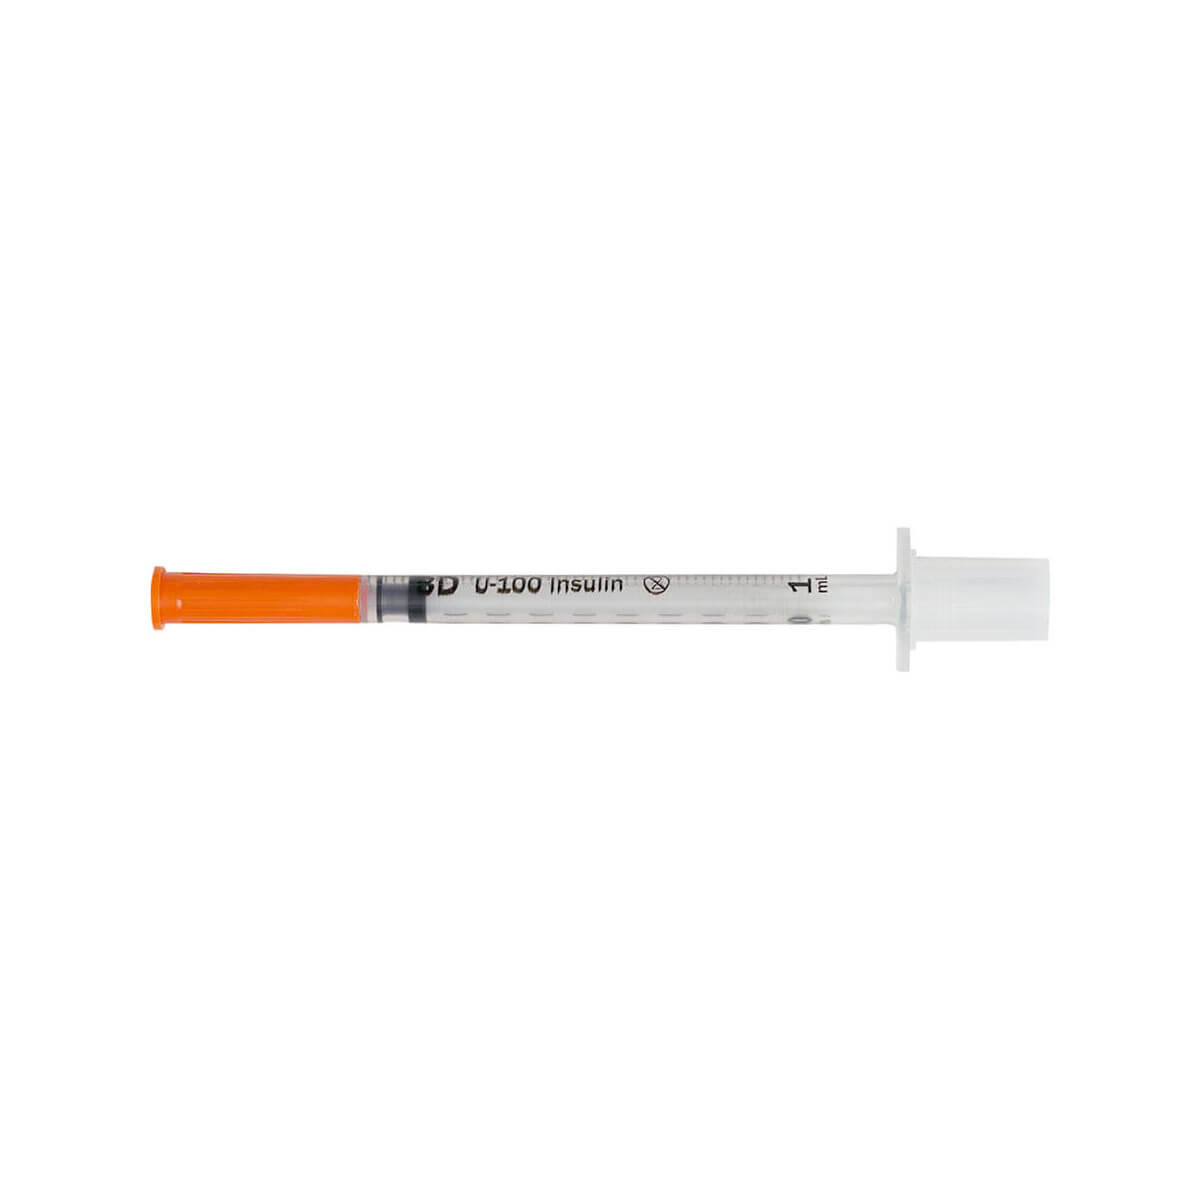 BD Microfine Insulin Syringe U-100 1ML 12,7MM 29G